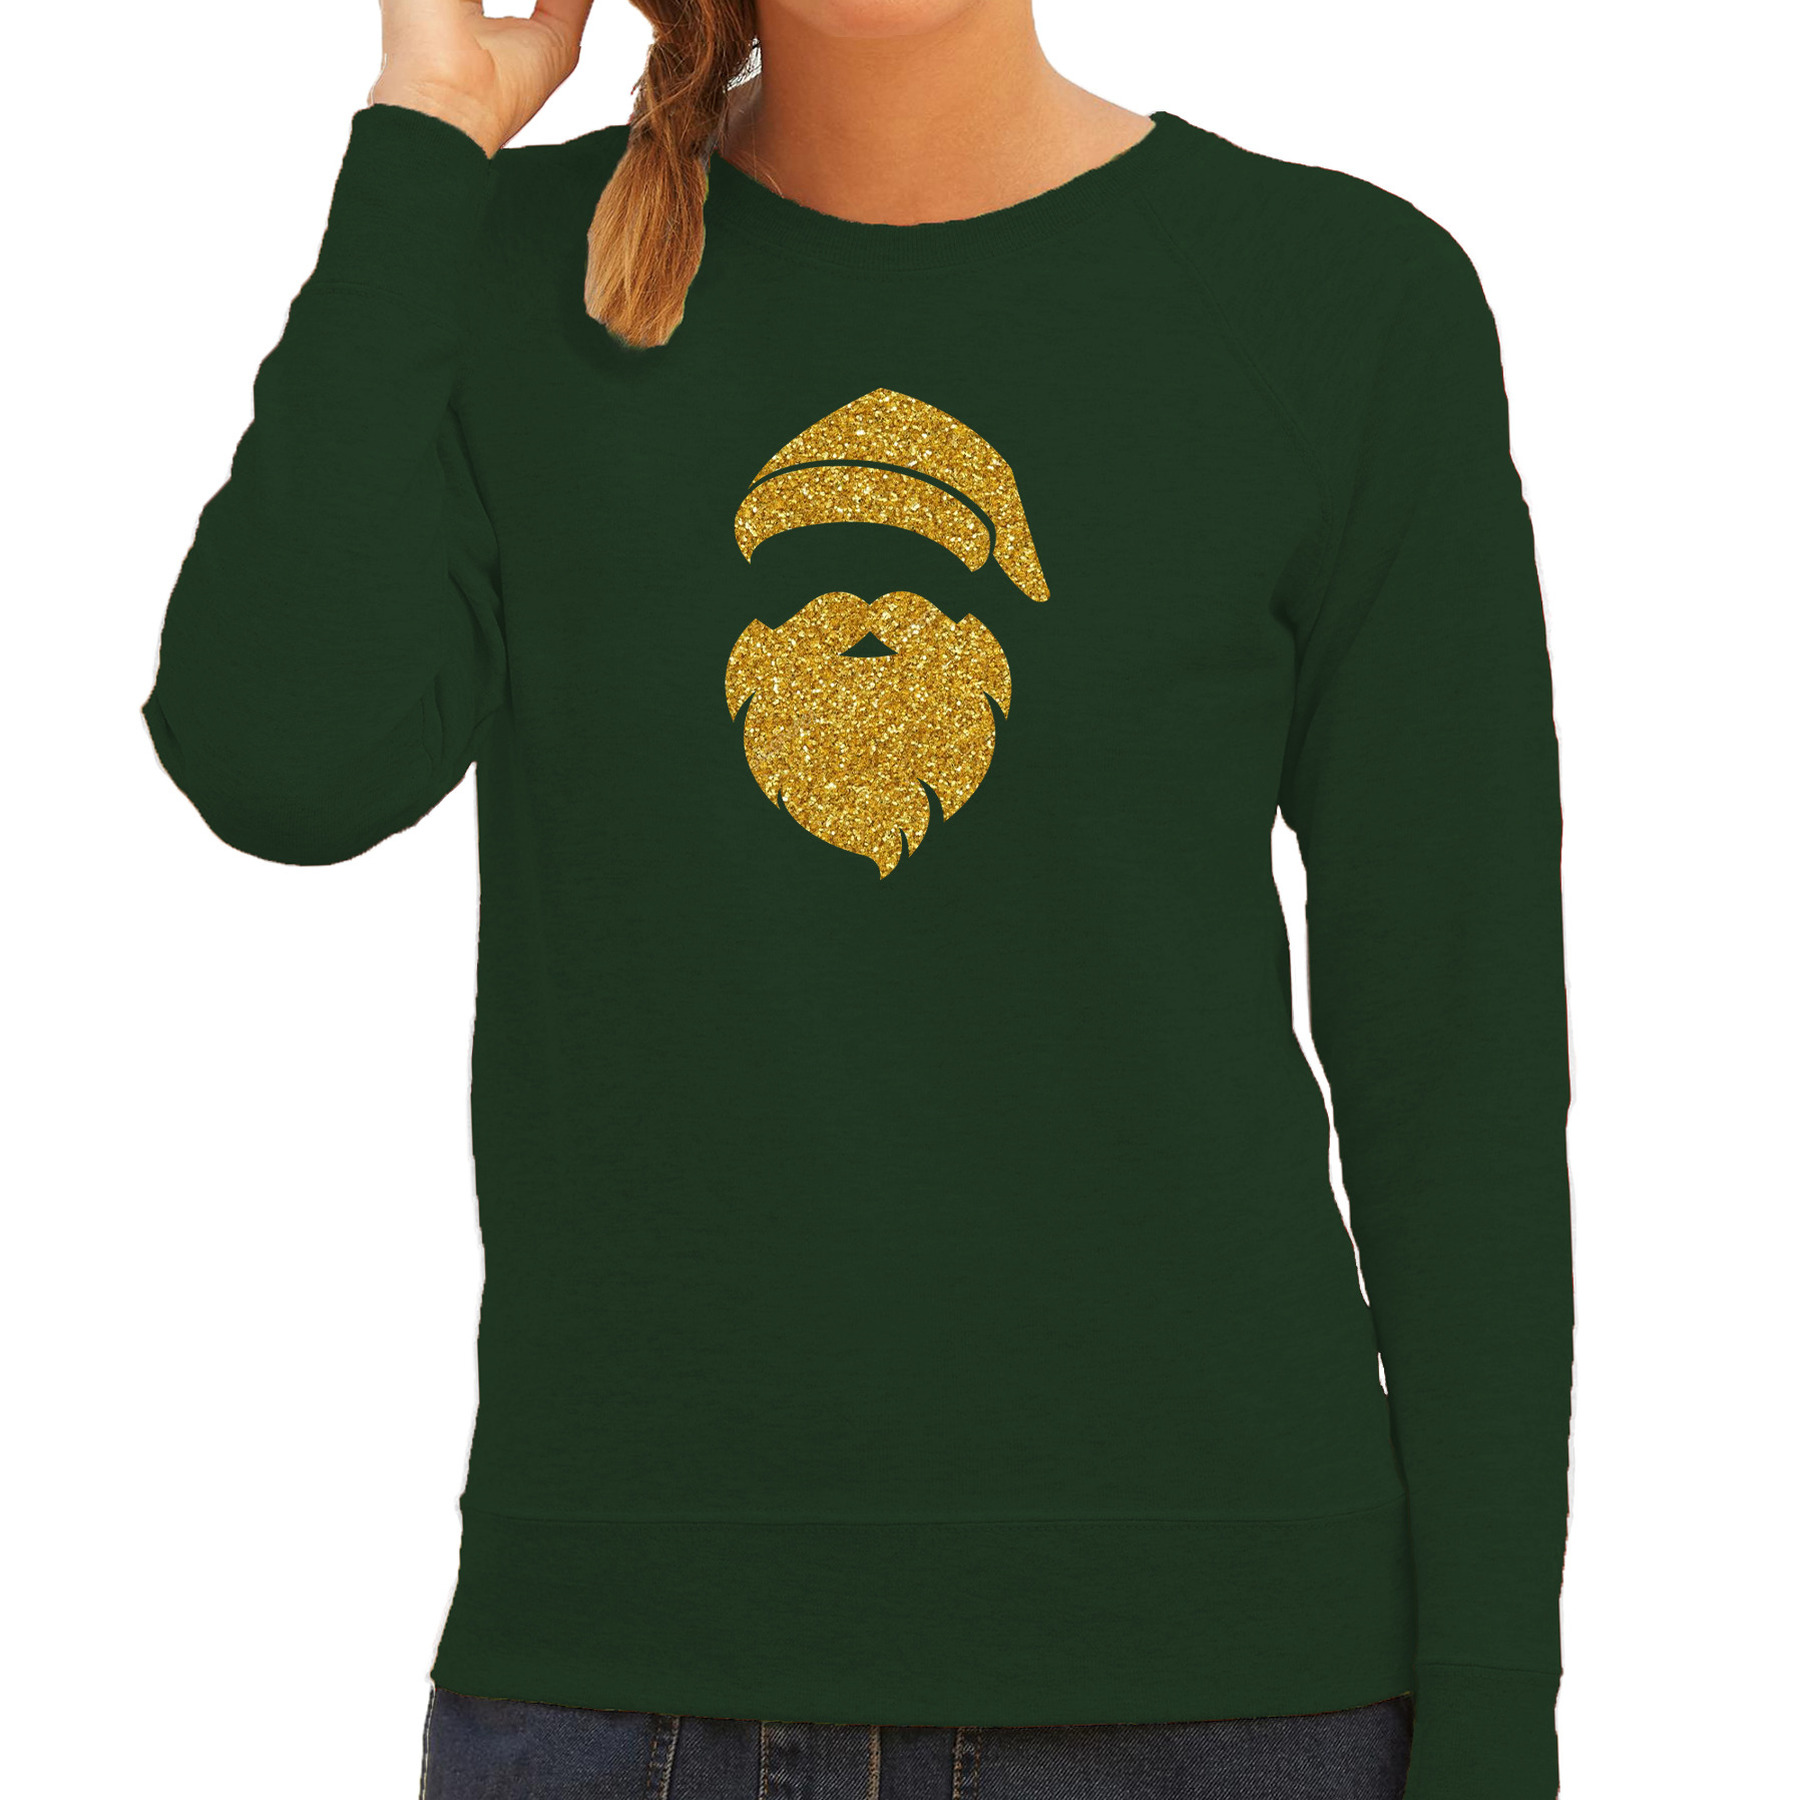 Kerstman hoofd Kerst sweater-trui groen voor dames met gouden glitter bedrukking